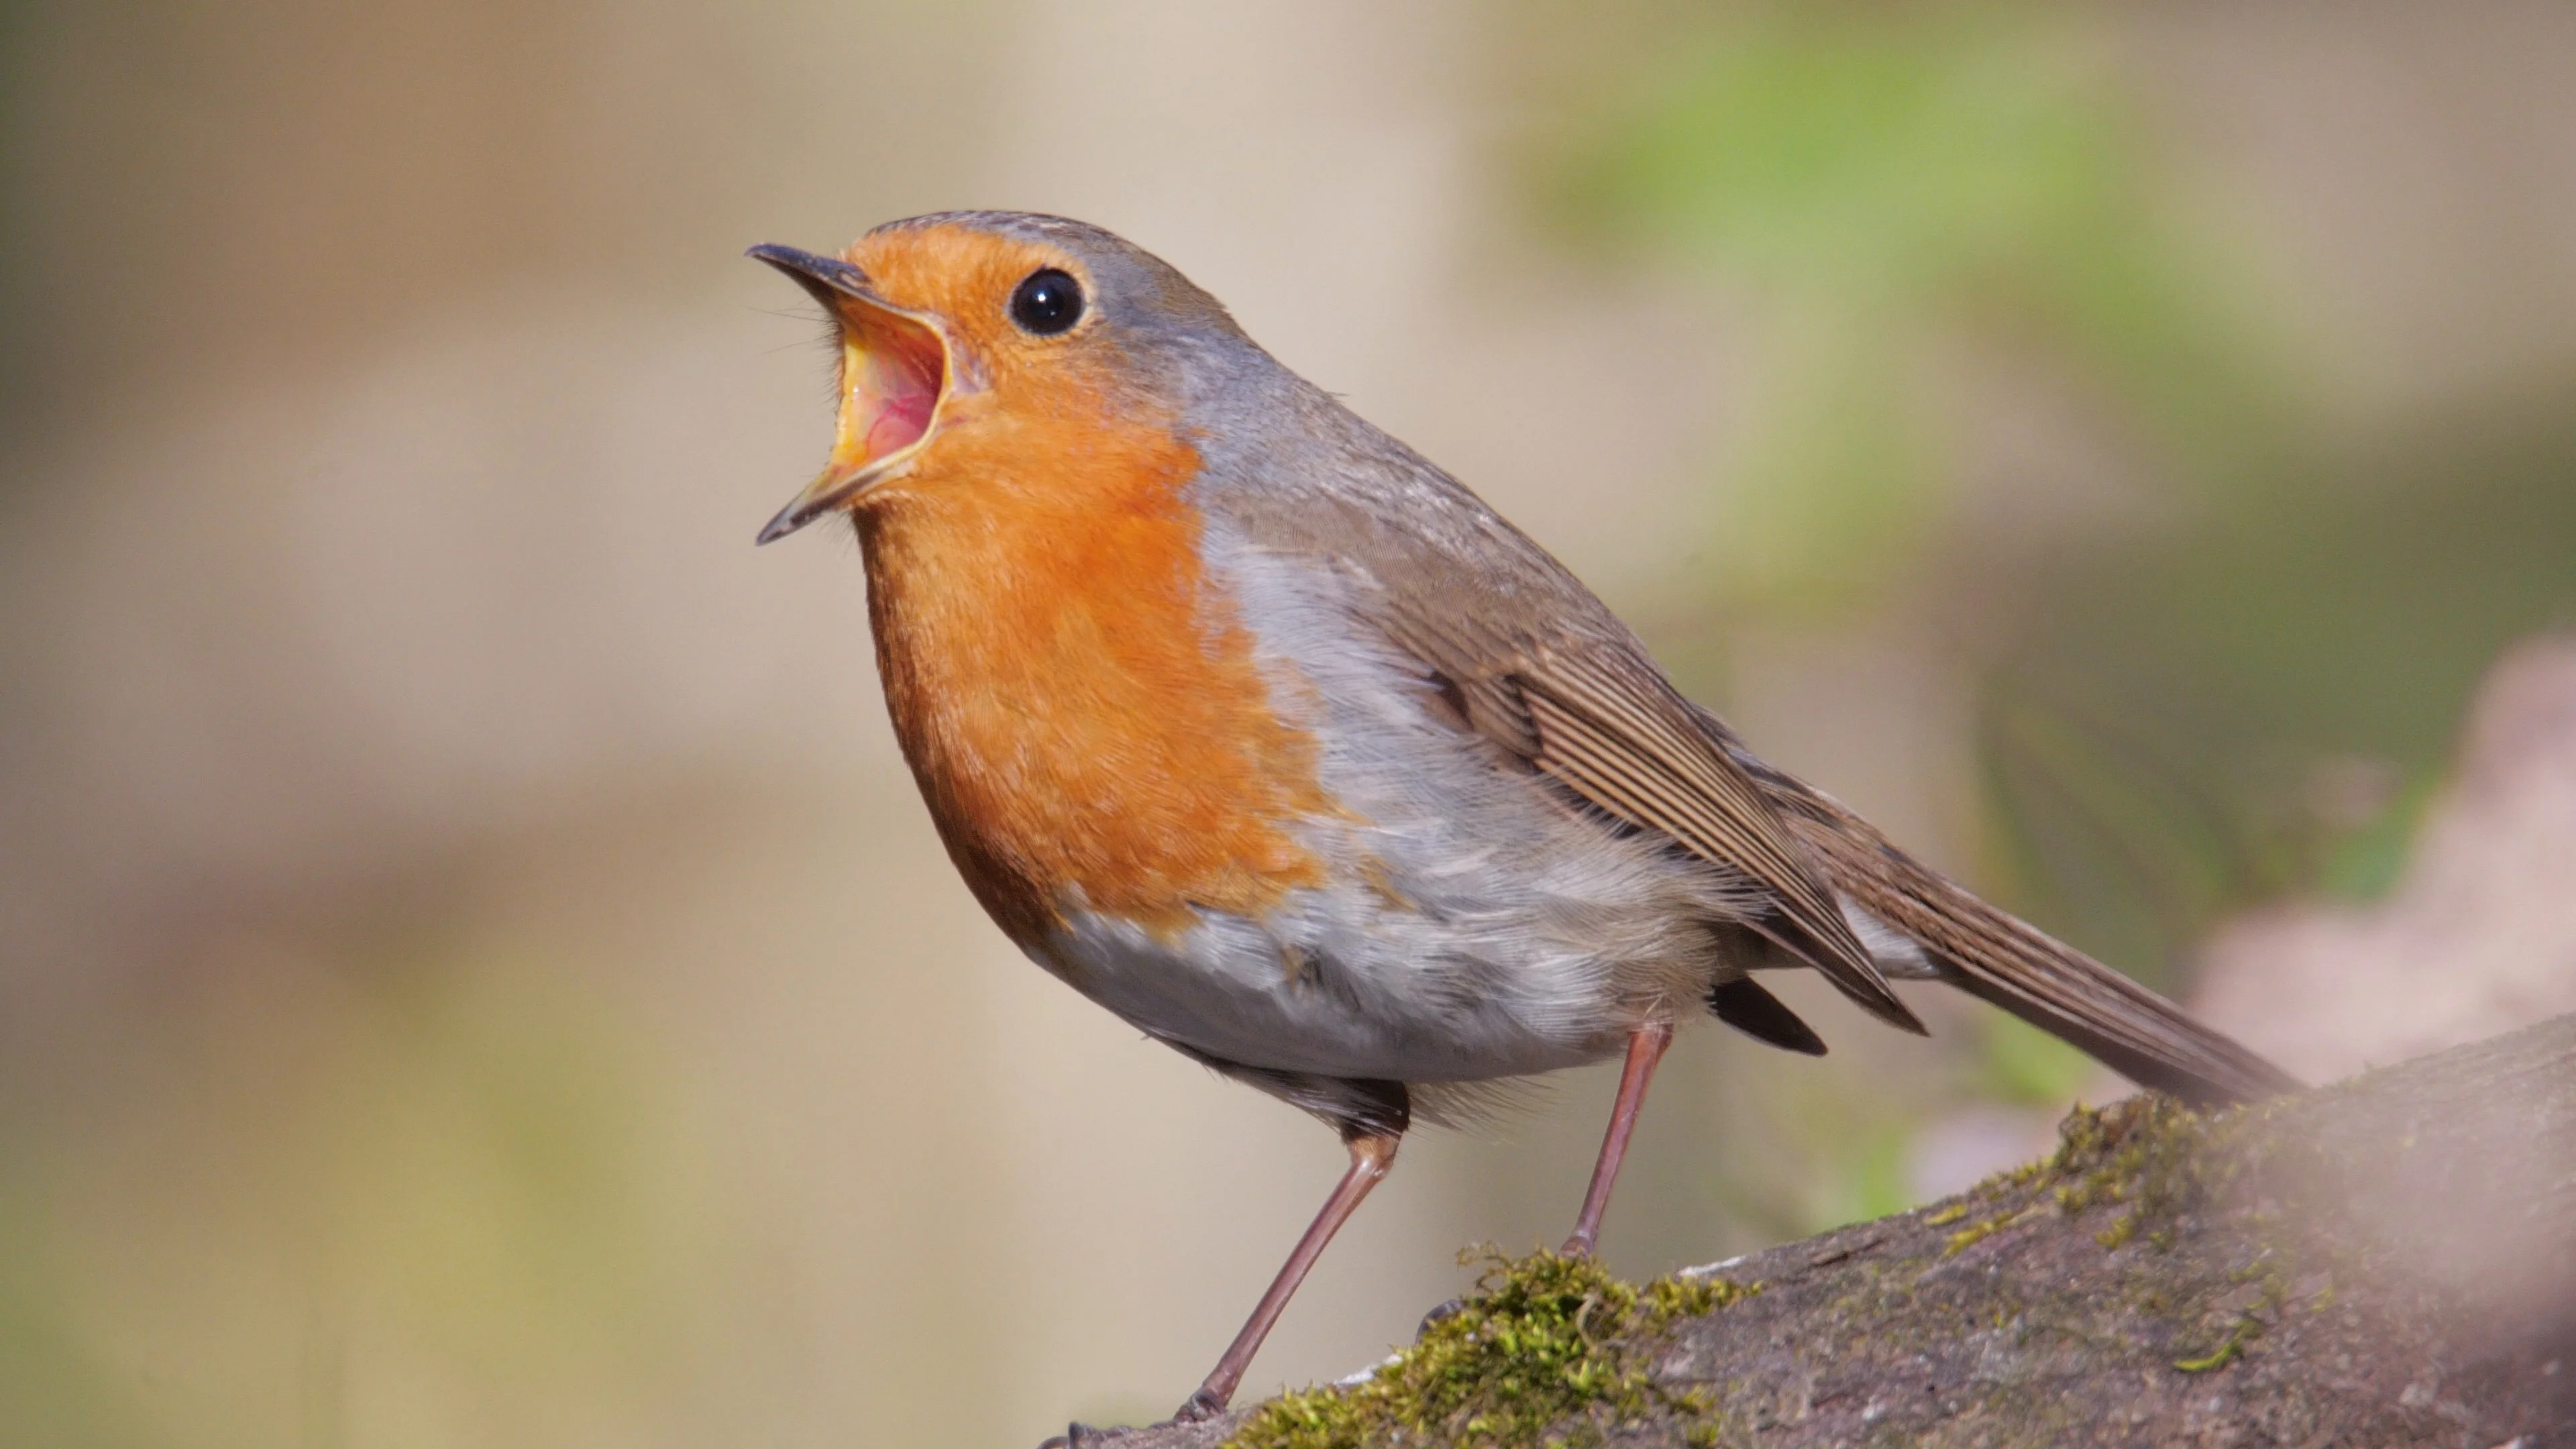 https://images.pond5.com/european-robin-singing-bird-spring-088765540_prevstill.jpeg